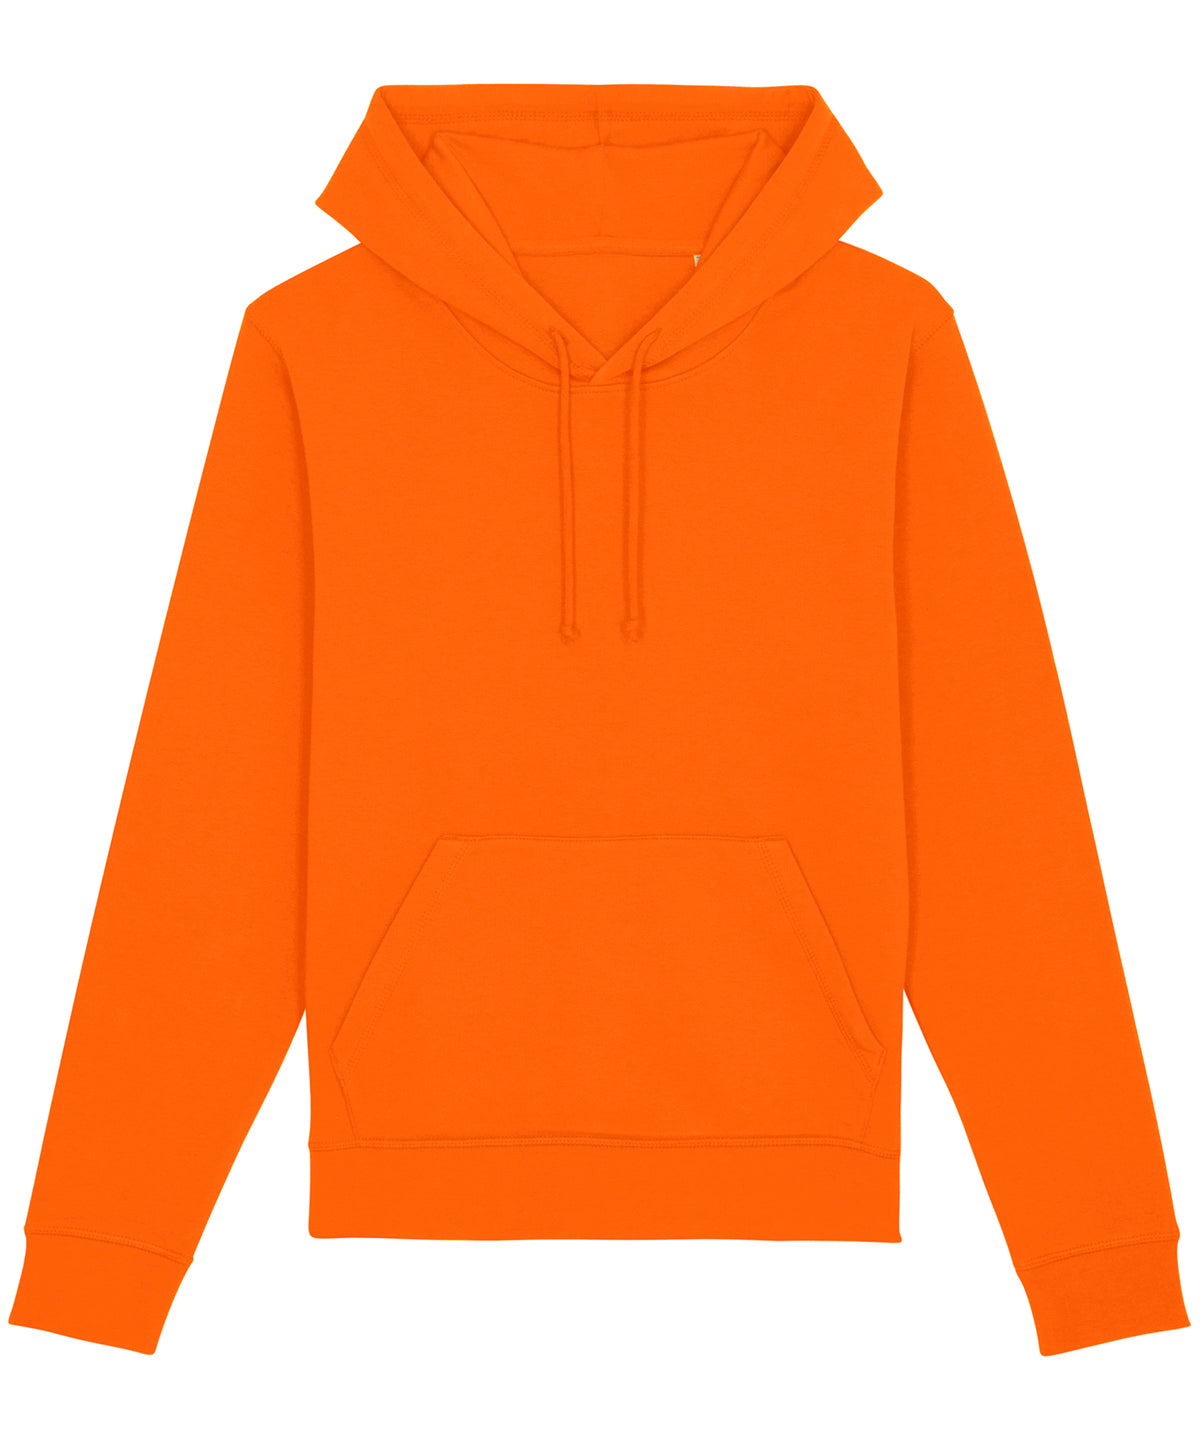 Stanley/Stella Drummer The Essential Unisex Hoodie Sweatshirt  Bright Orange